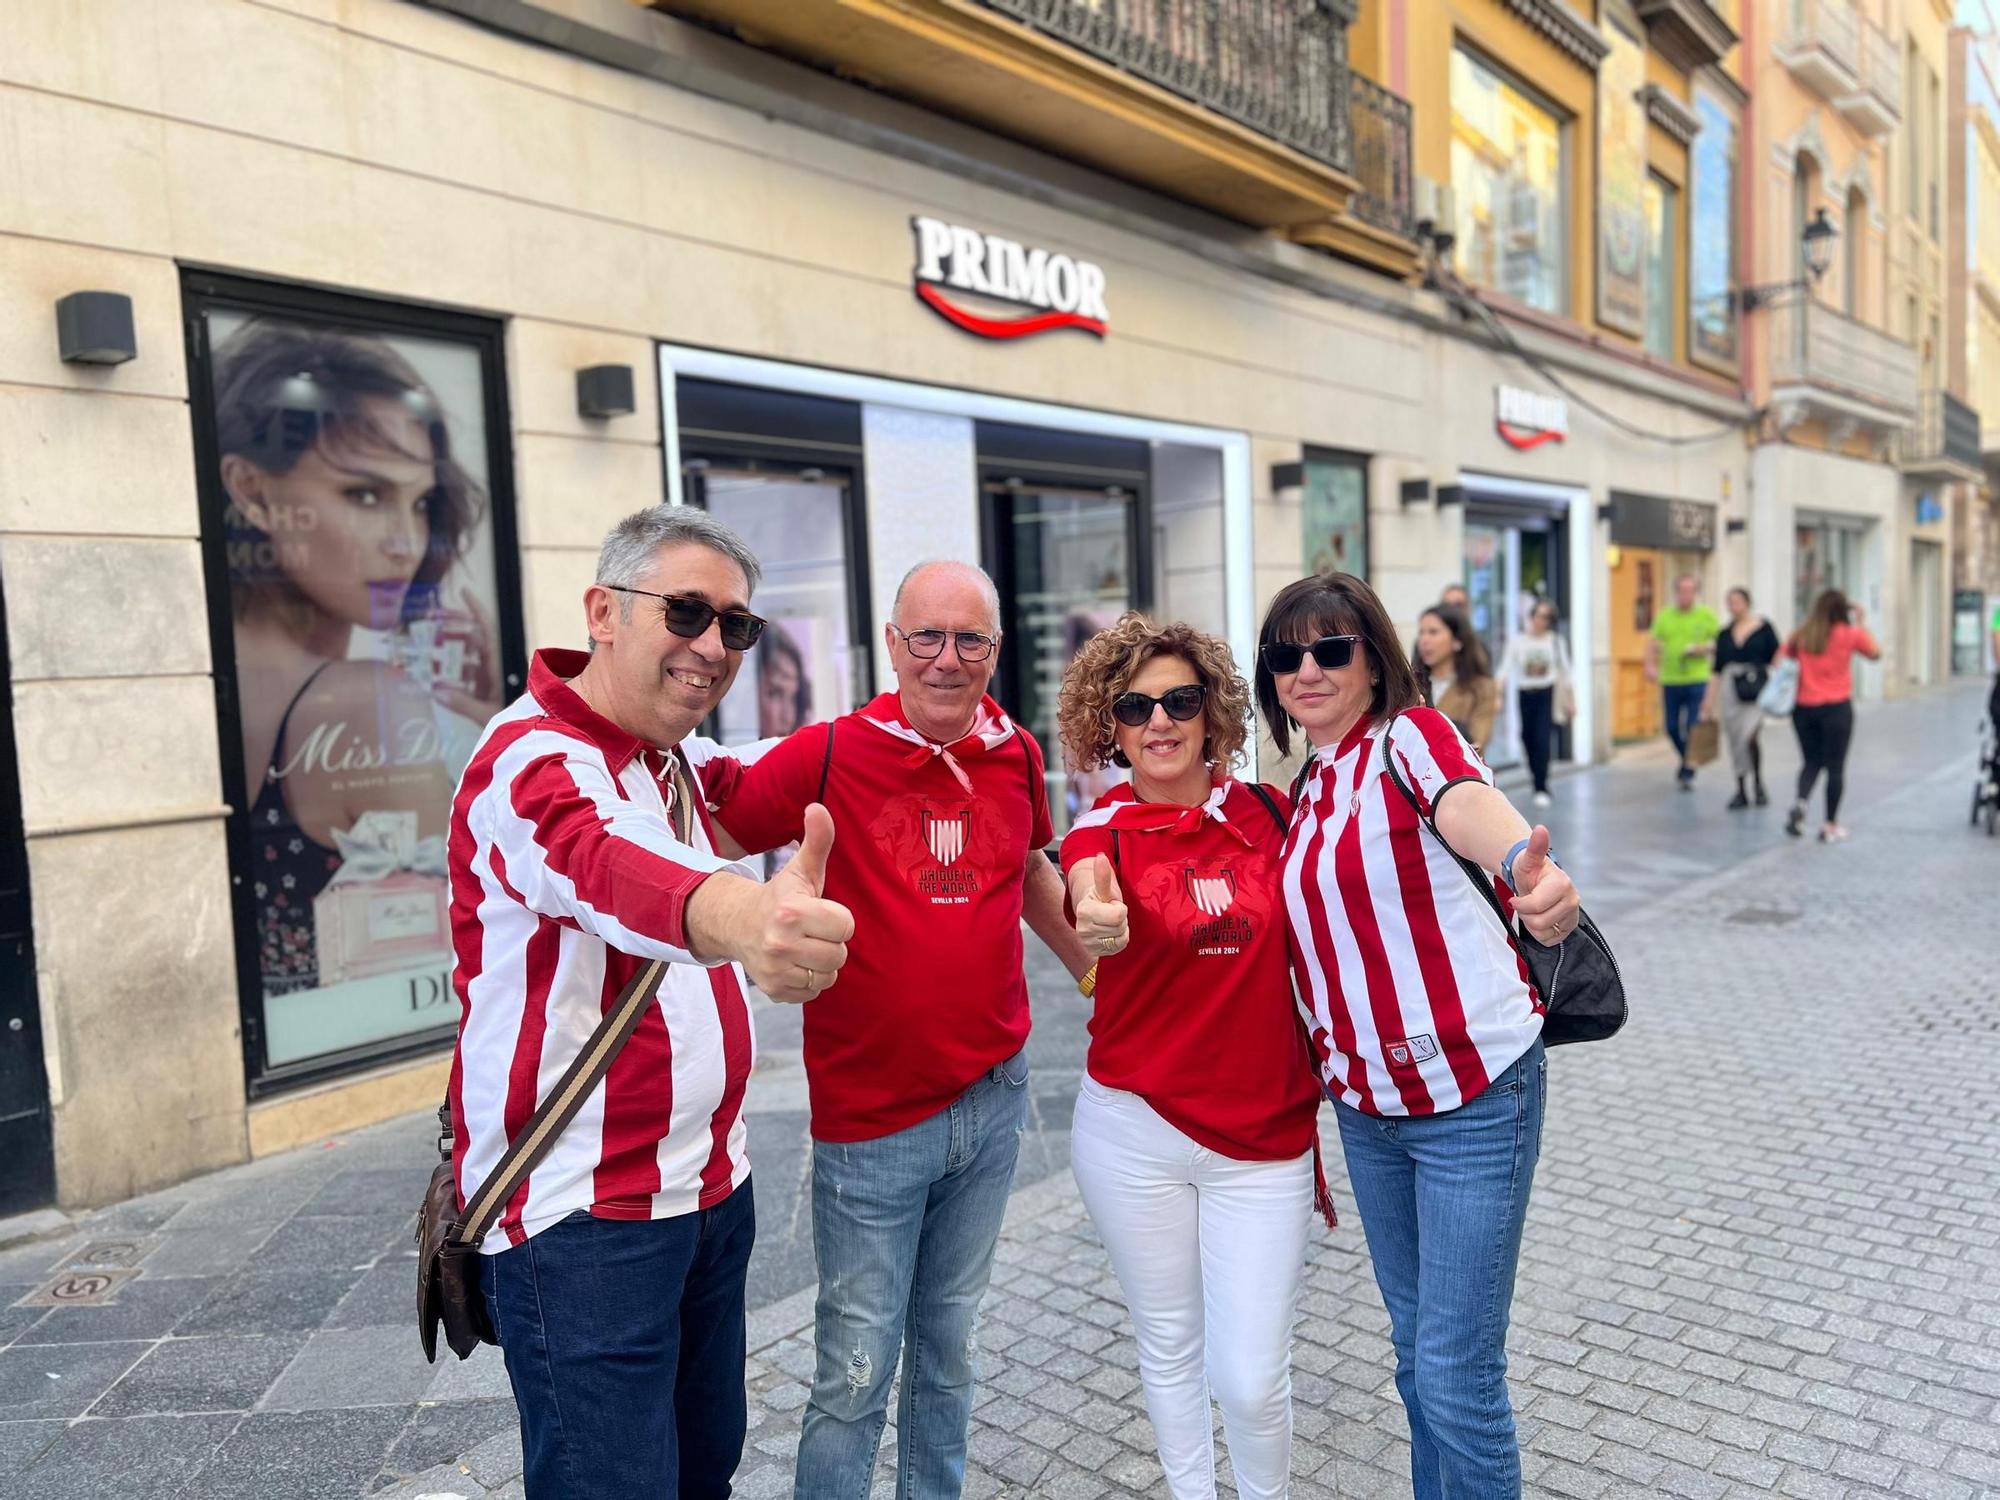 Aficionados del Athletic Club de Bilbao visitan Sevilla para el encuentro de la final de la Copa del Rey que su equipo disputará el próximo sábado contra el Real Club Deportivo Mallorca en el estadio de La Cartuja.